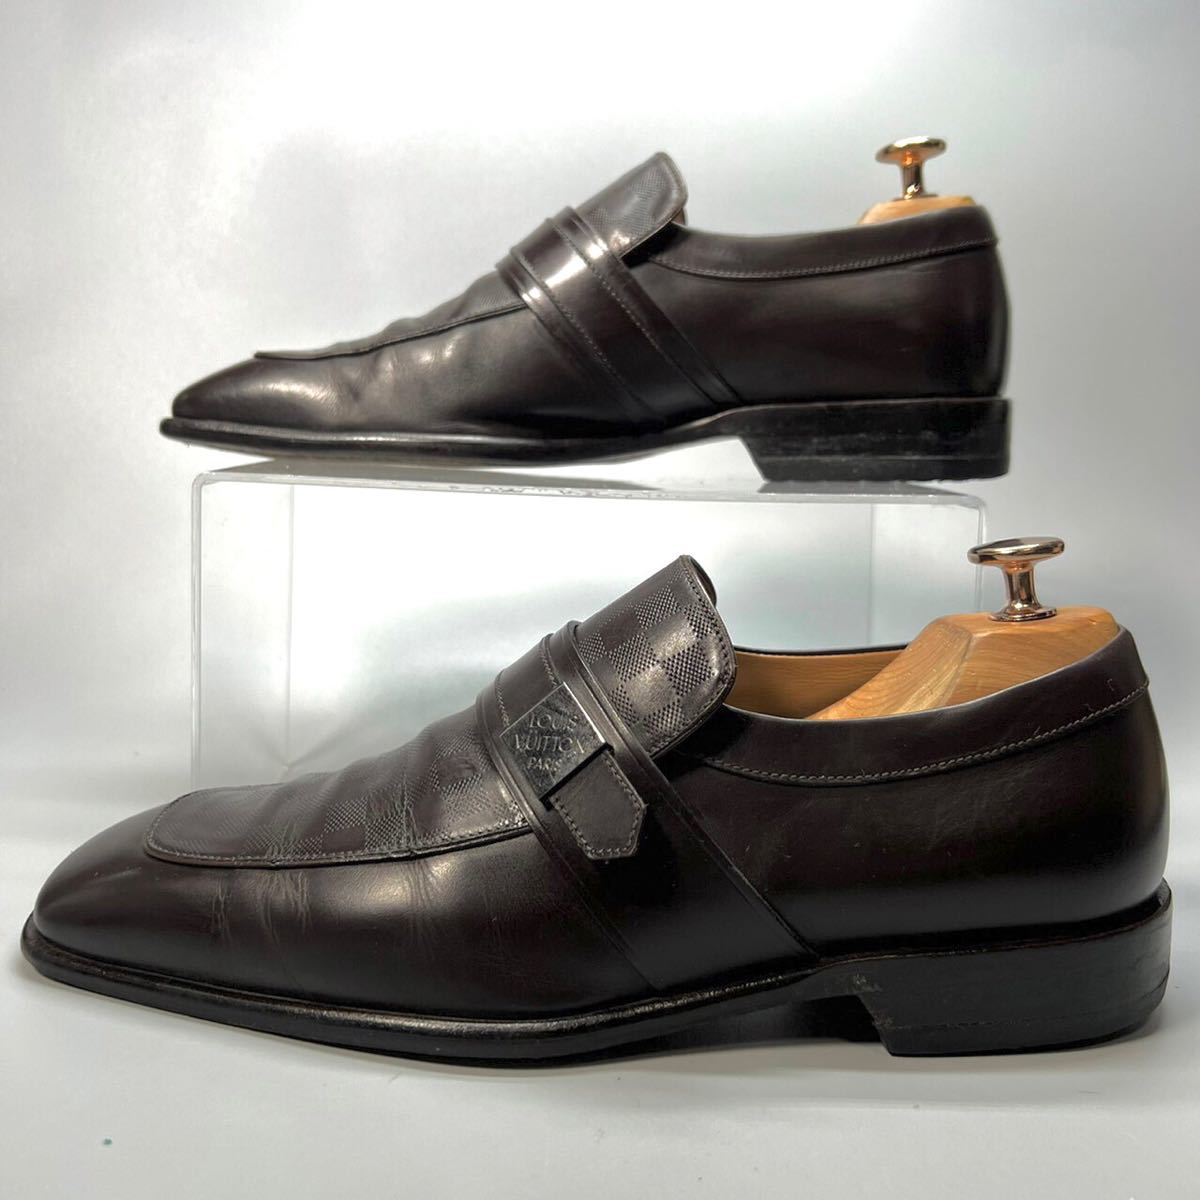 LOUIS VUITTON ルイヴィトン 革靴 ダミエ ダークブラウン 5 1/2 24.5〜25.0cm メンズ 靴 シューズ